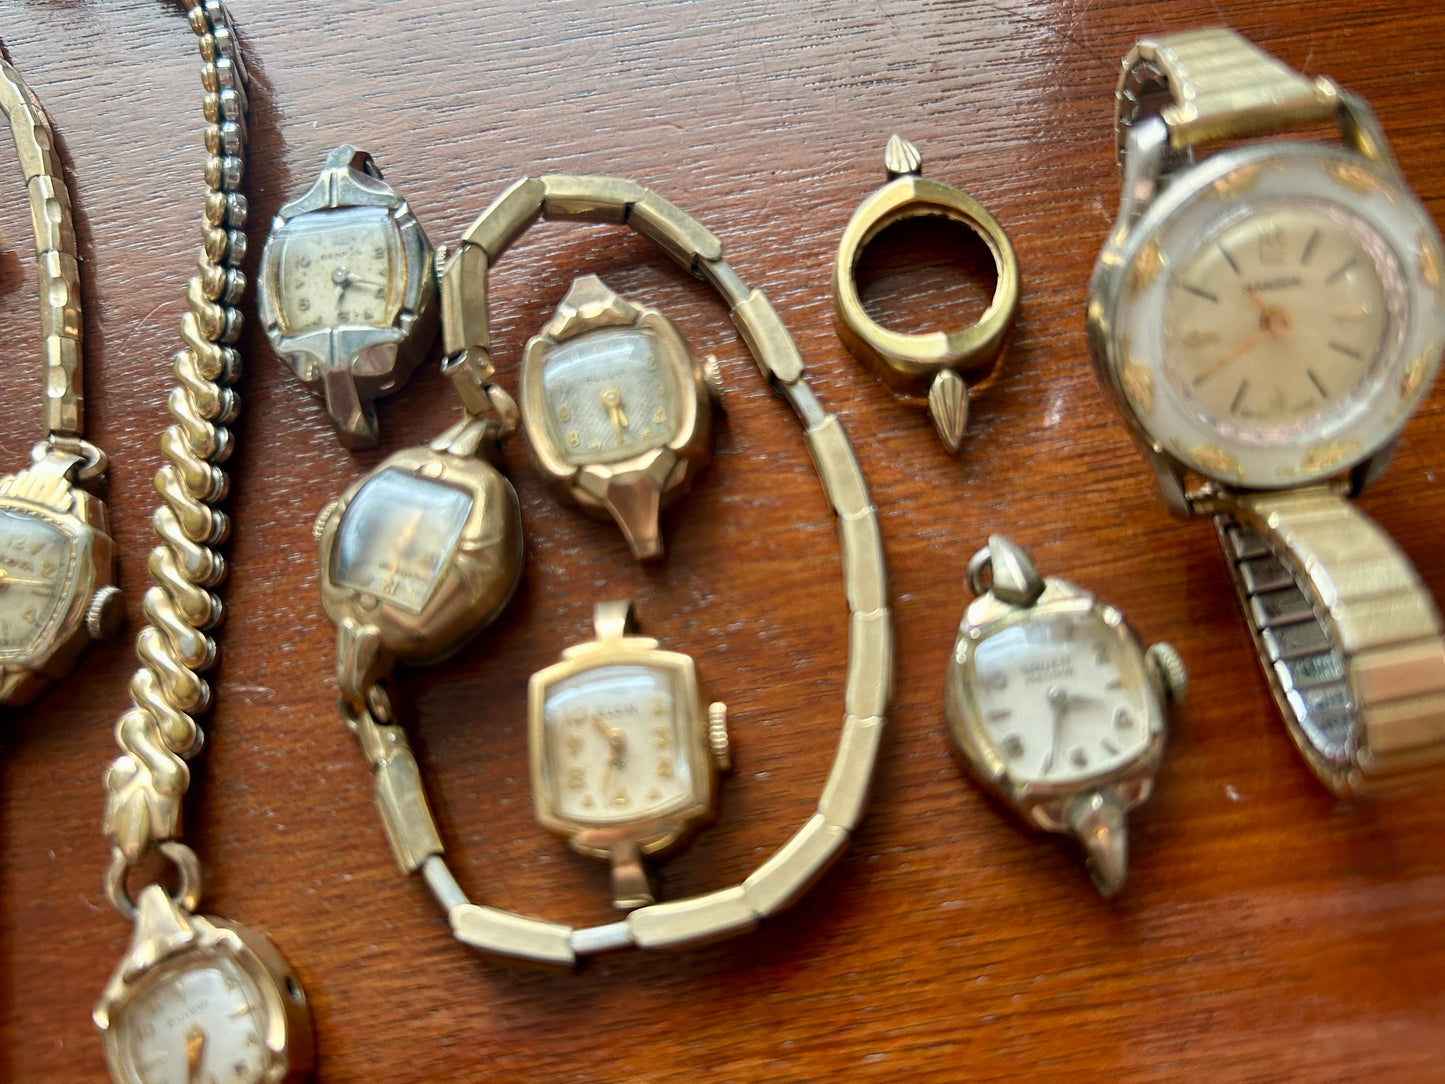 Huge Lot of Gold Filled Rolled Gold Vintage Womens Watch Bulova Elgin Gruen More